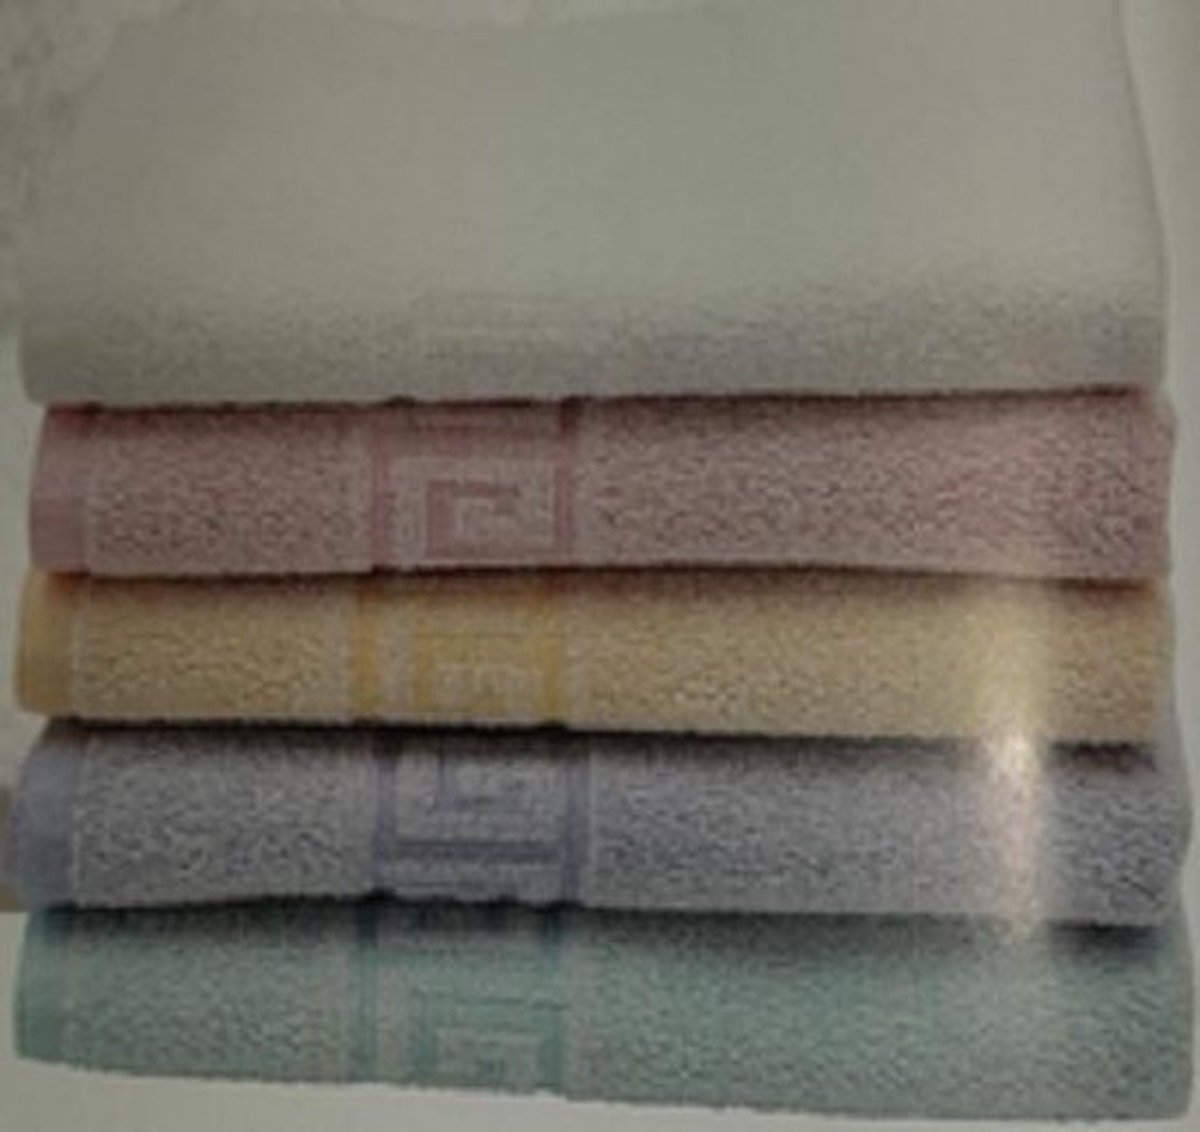 Careline badhanddoeken 70 cm bij 140 cm 5 stuks - wit